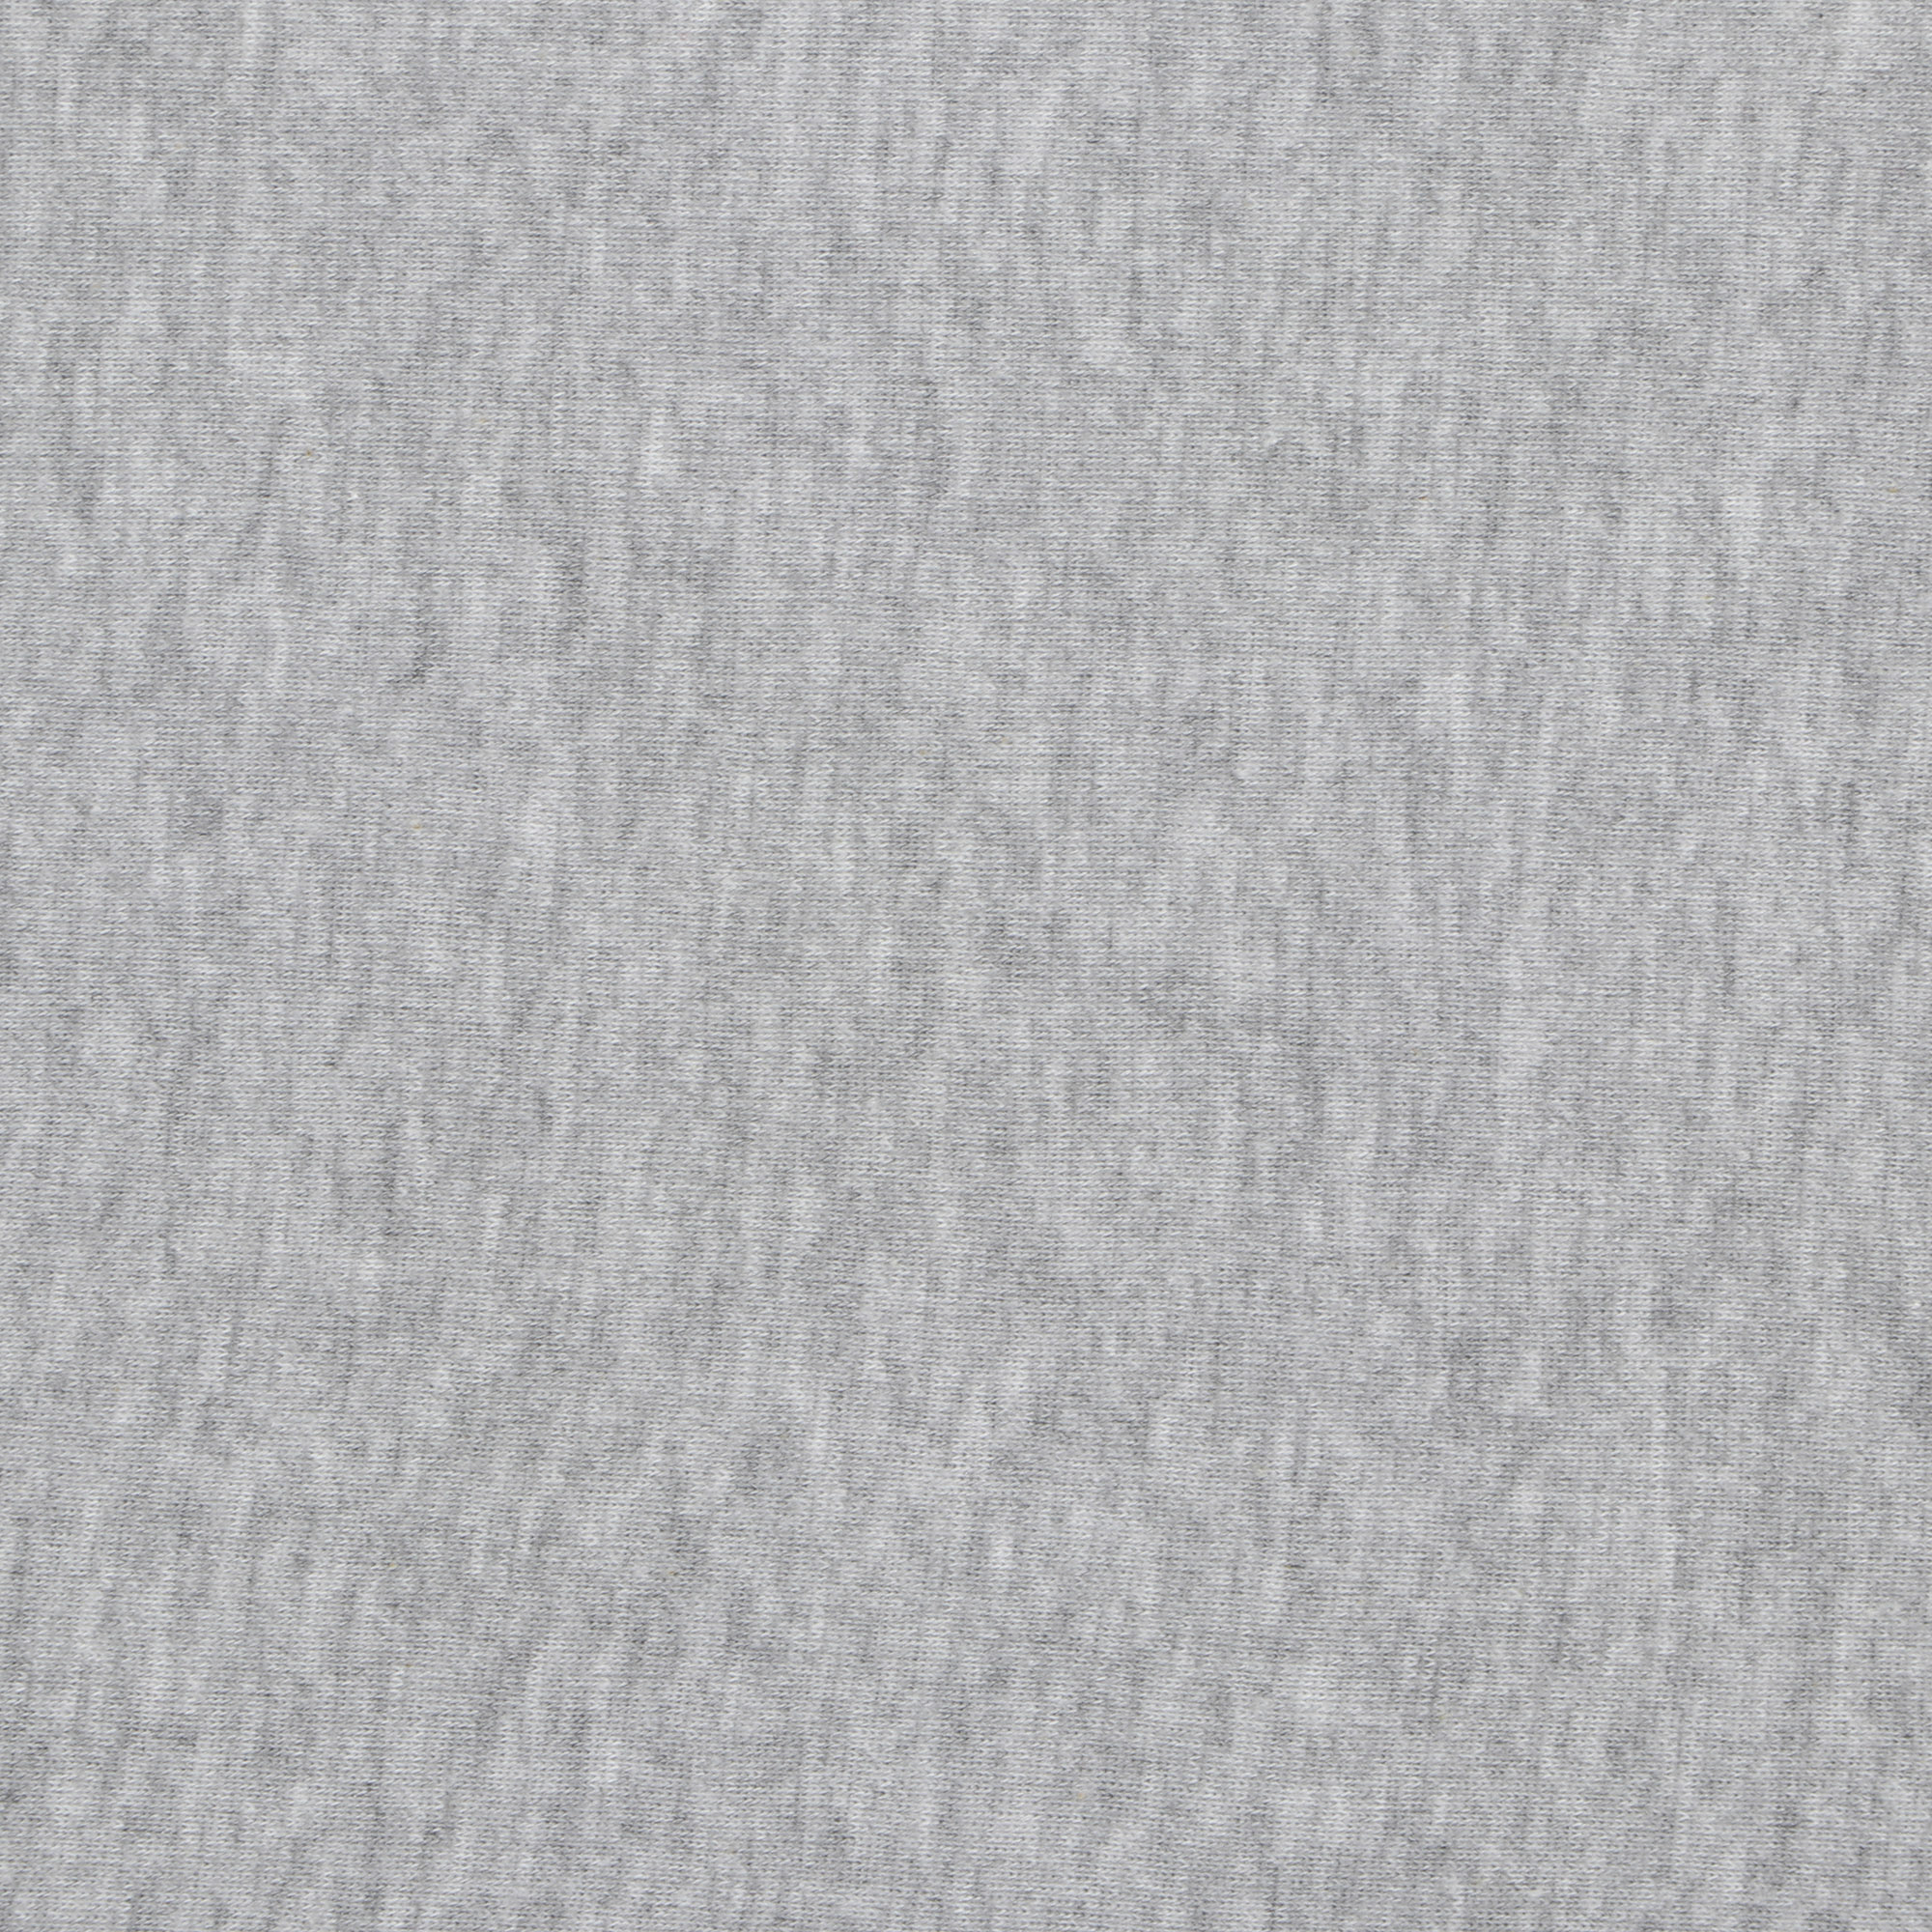 Футболка мужская Pantelemone 50 серая, цвет серый, размер 50 - фото 3